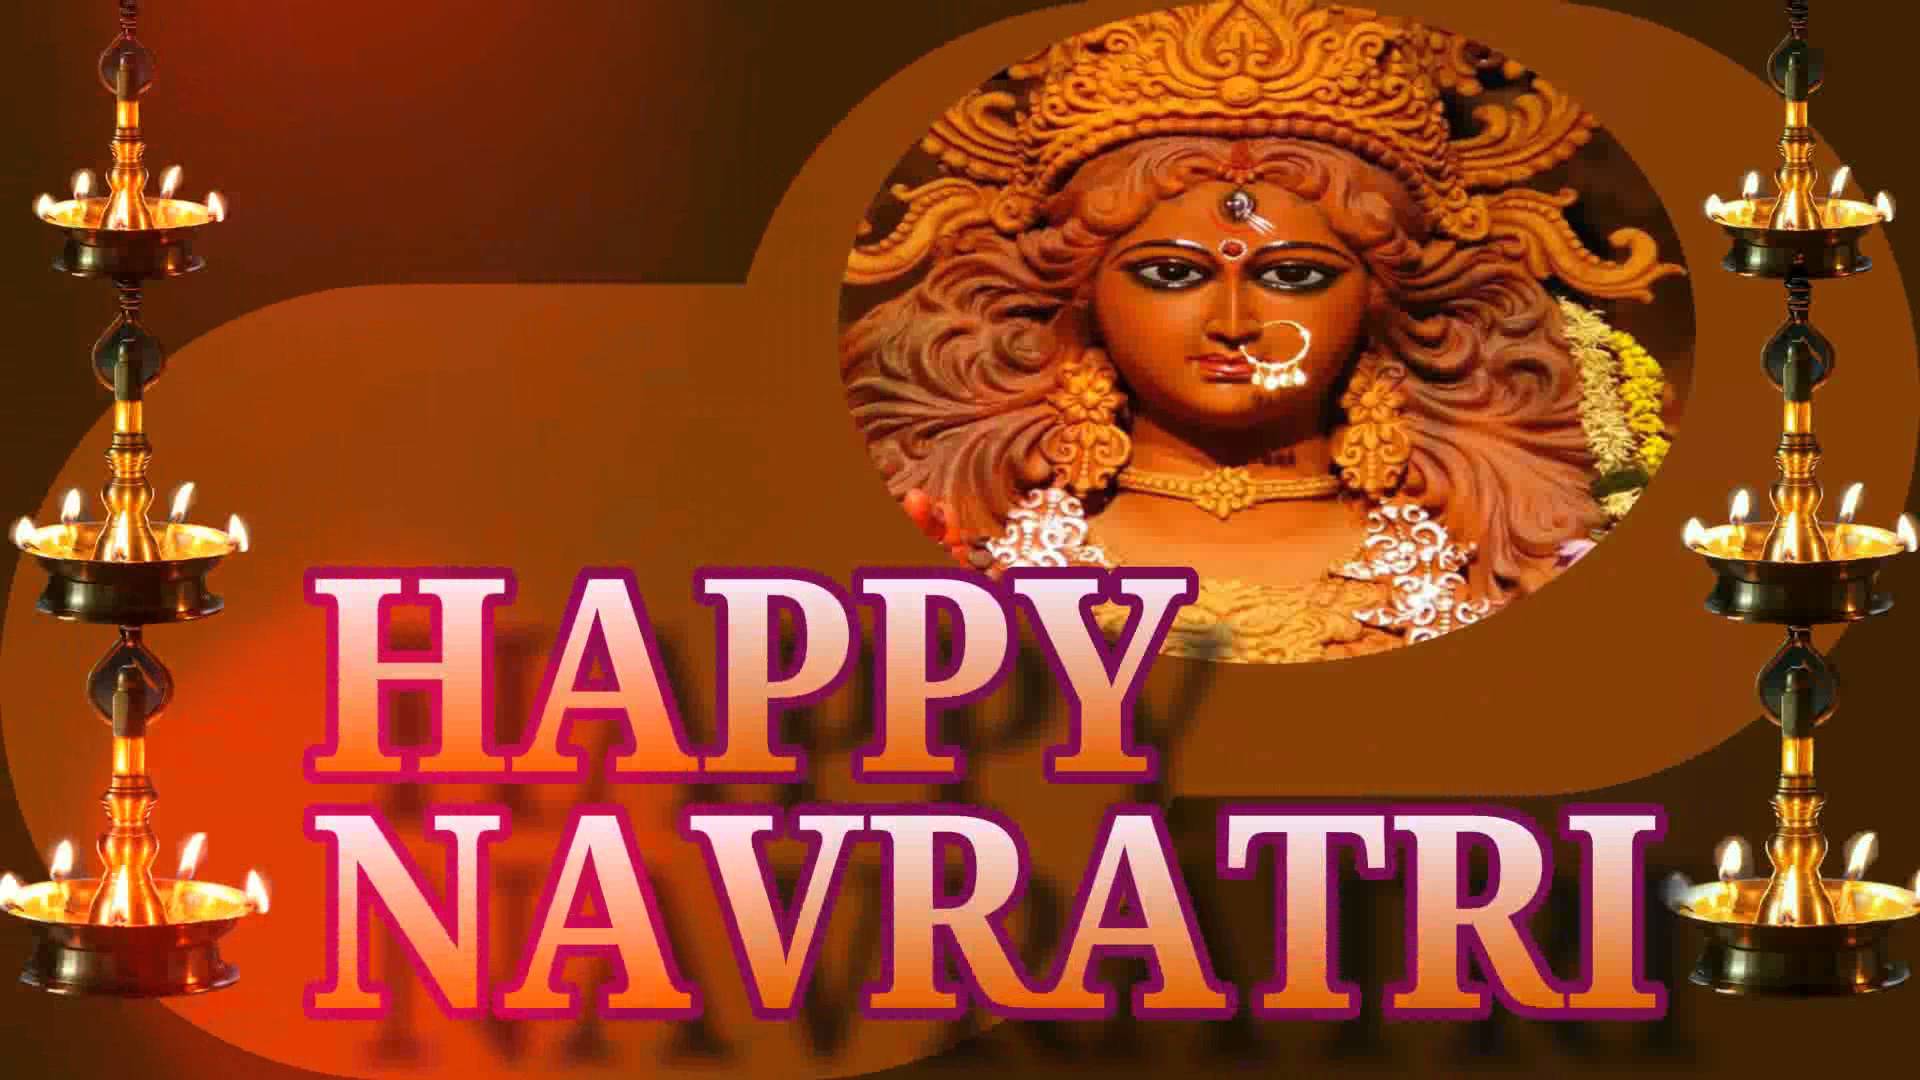 Happy Navratri 2017 Goddess durga picture